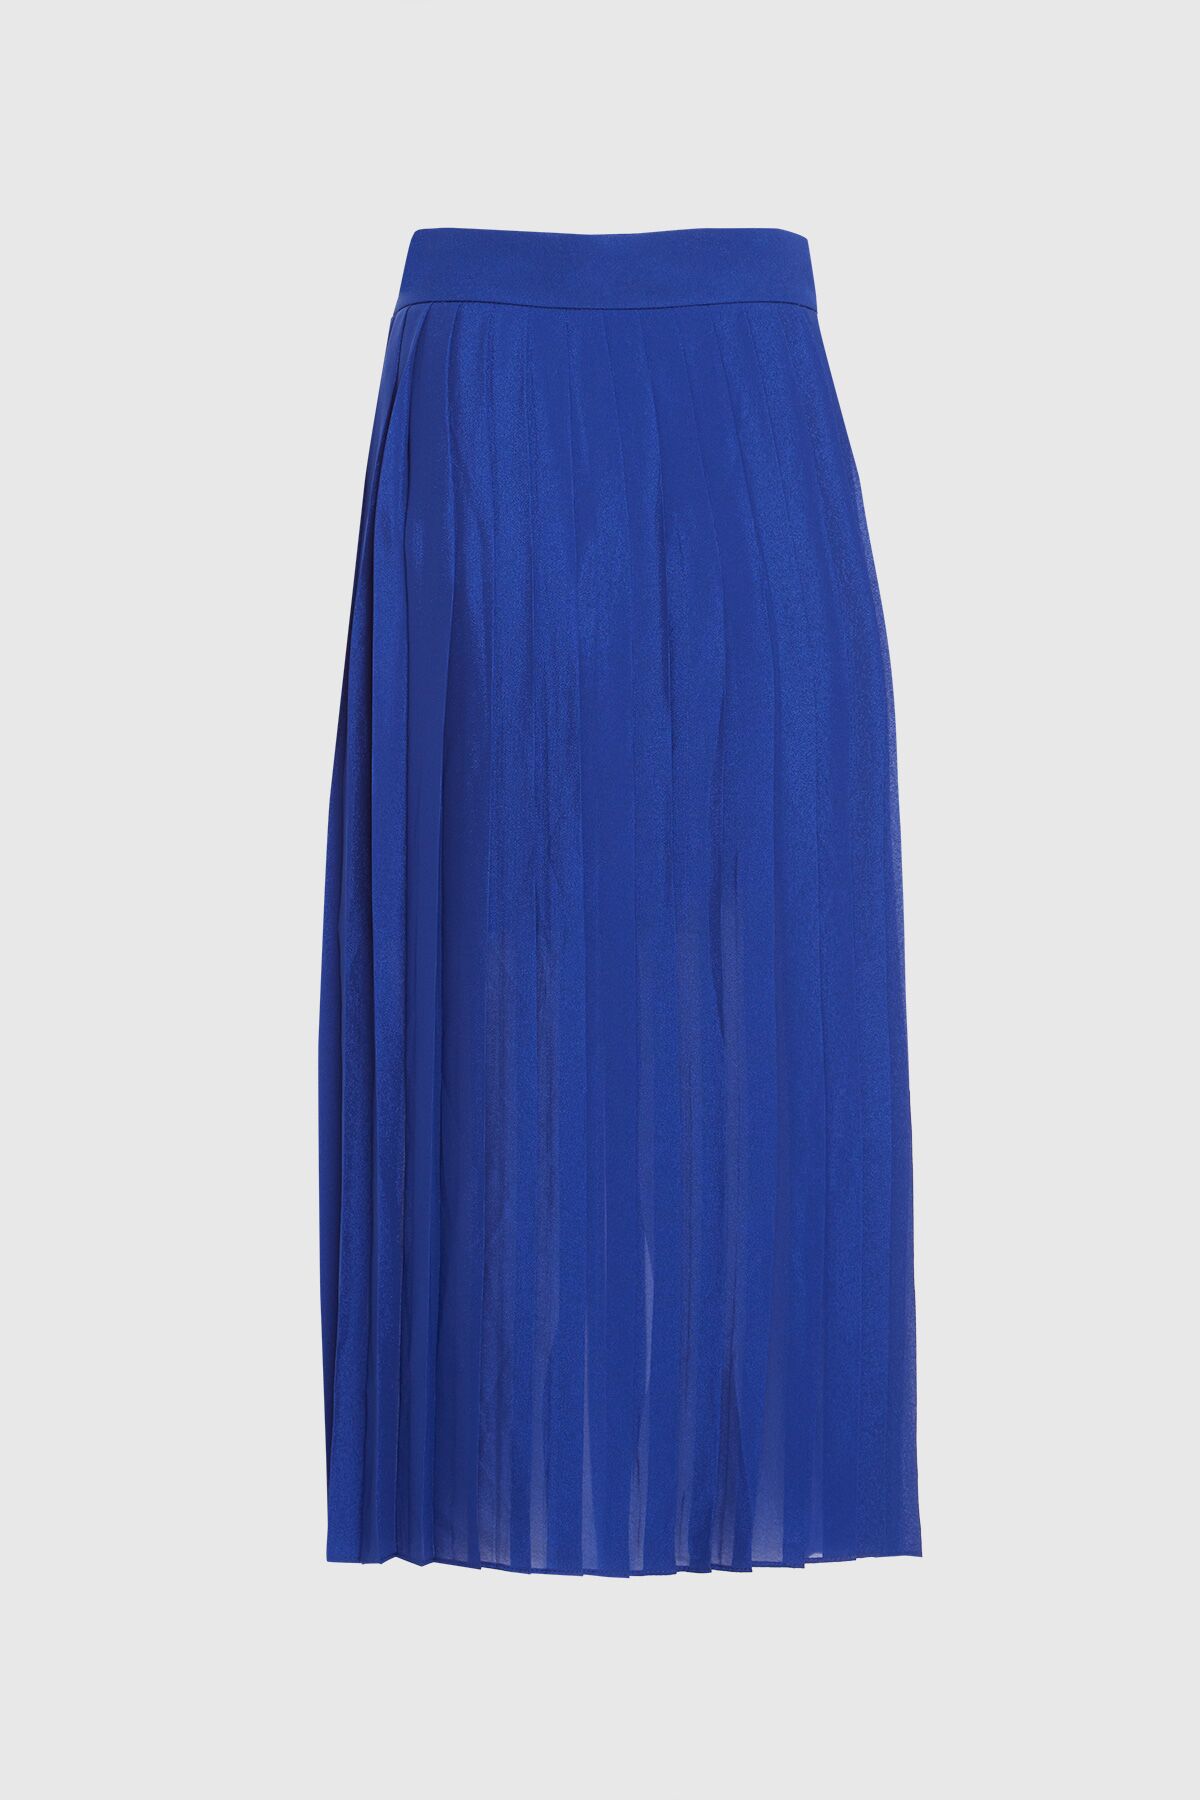 KIWE - Pleated Blue Midi Skirt